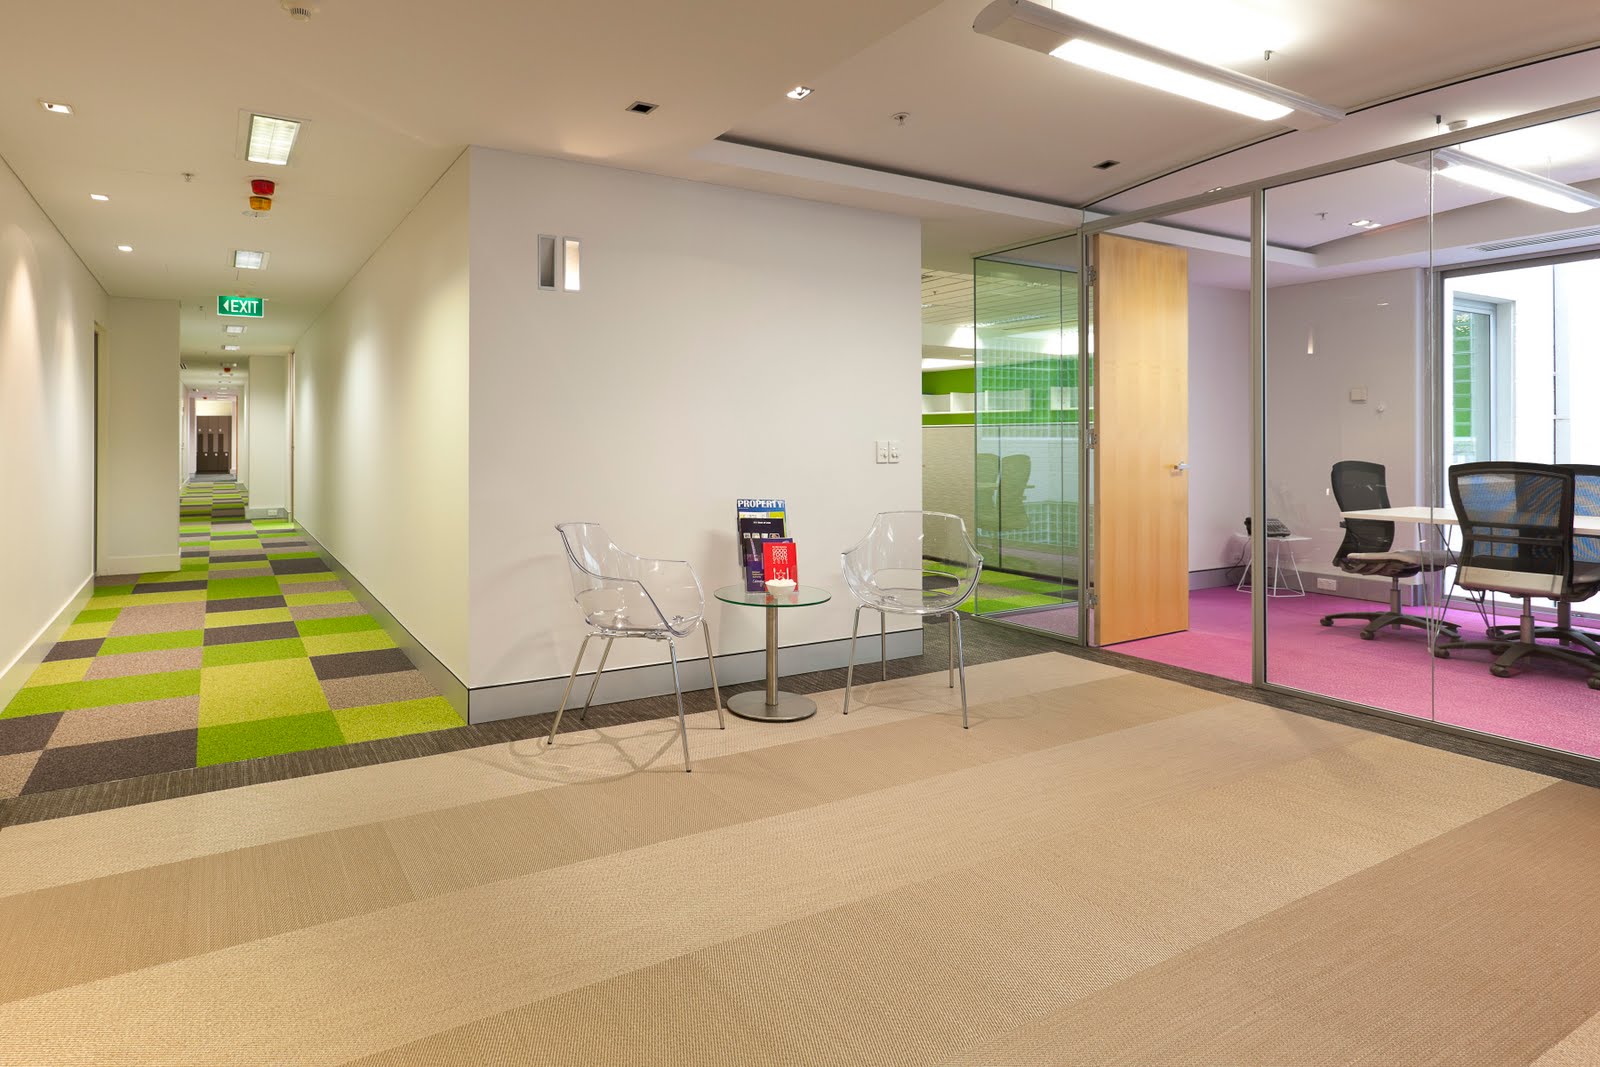 New Floor Tiles Design For Offices for Living room